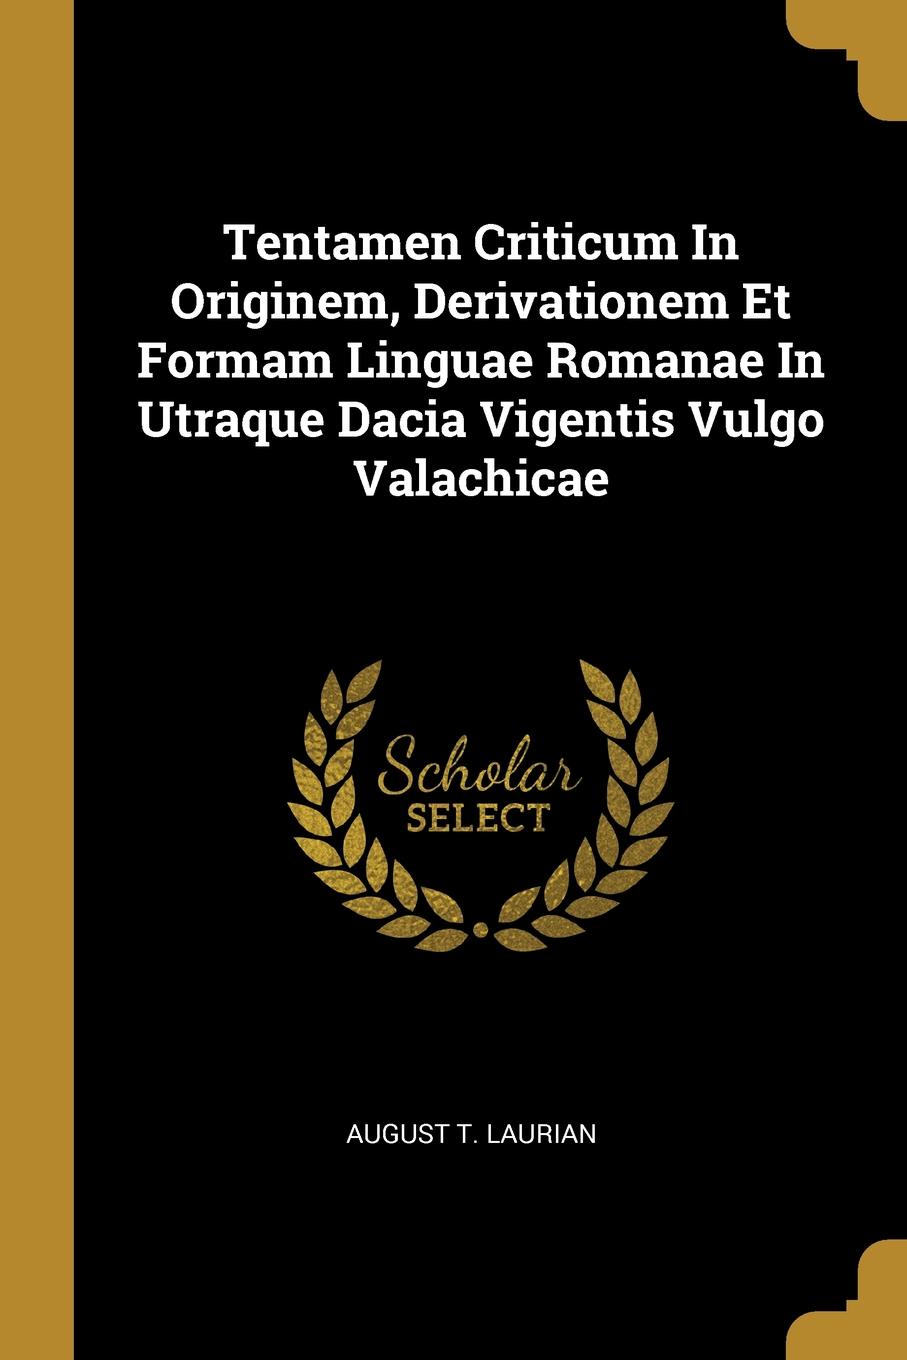 Tentamen Criticum In Originem, Derivationem Et Formam Linguae Romanae In Utraque Dacia Vigentis Vulgo Valachicae